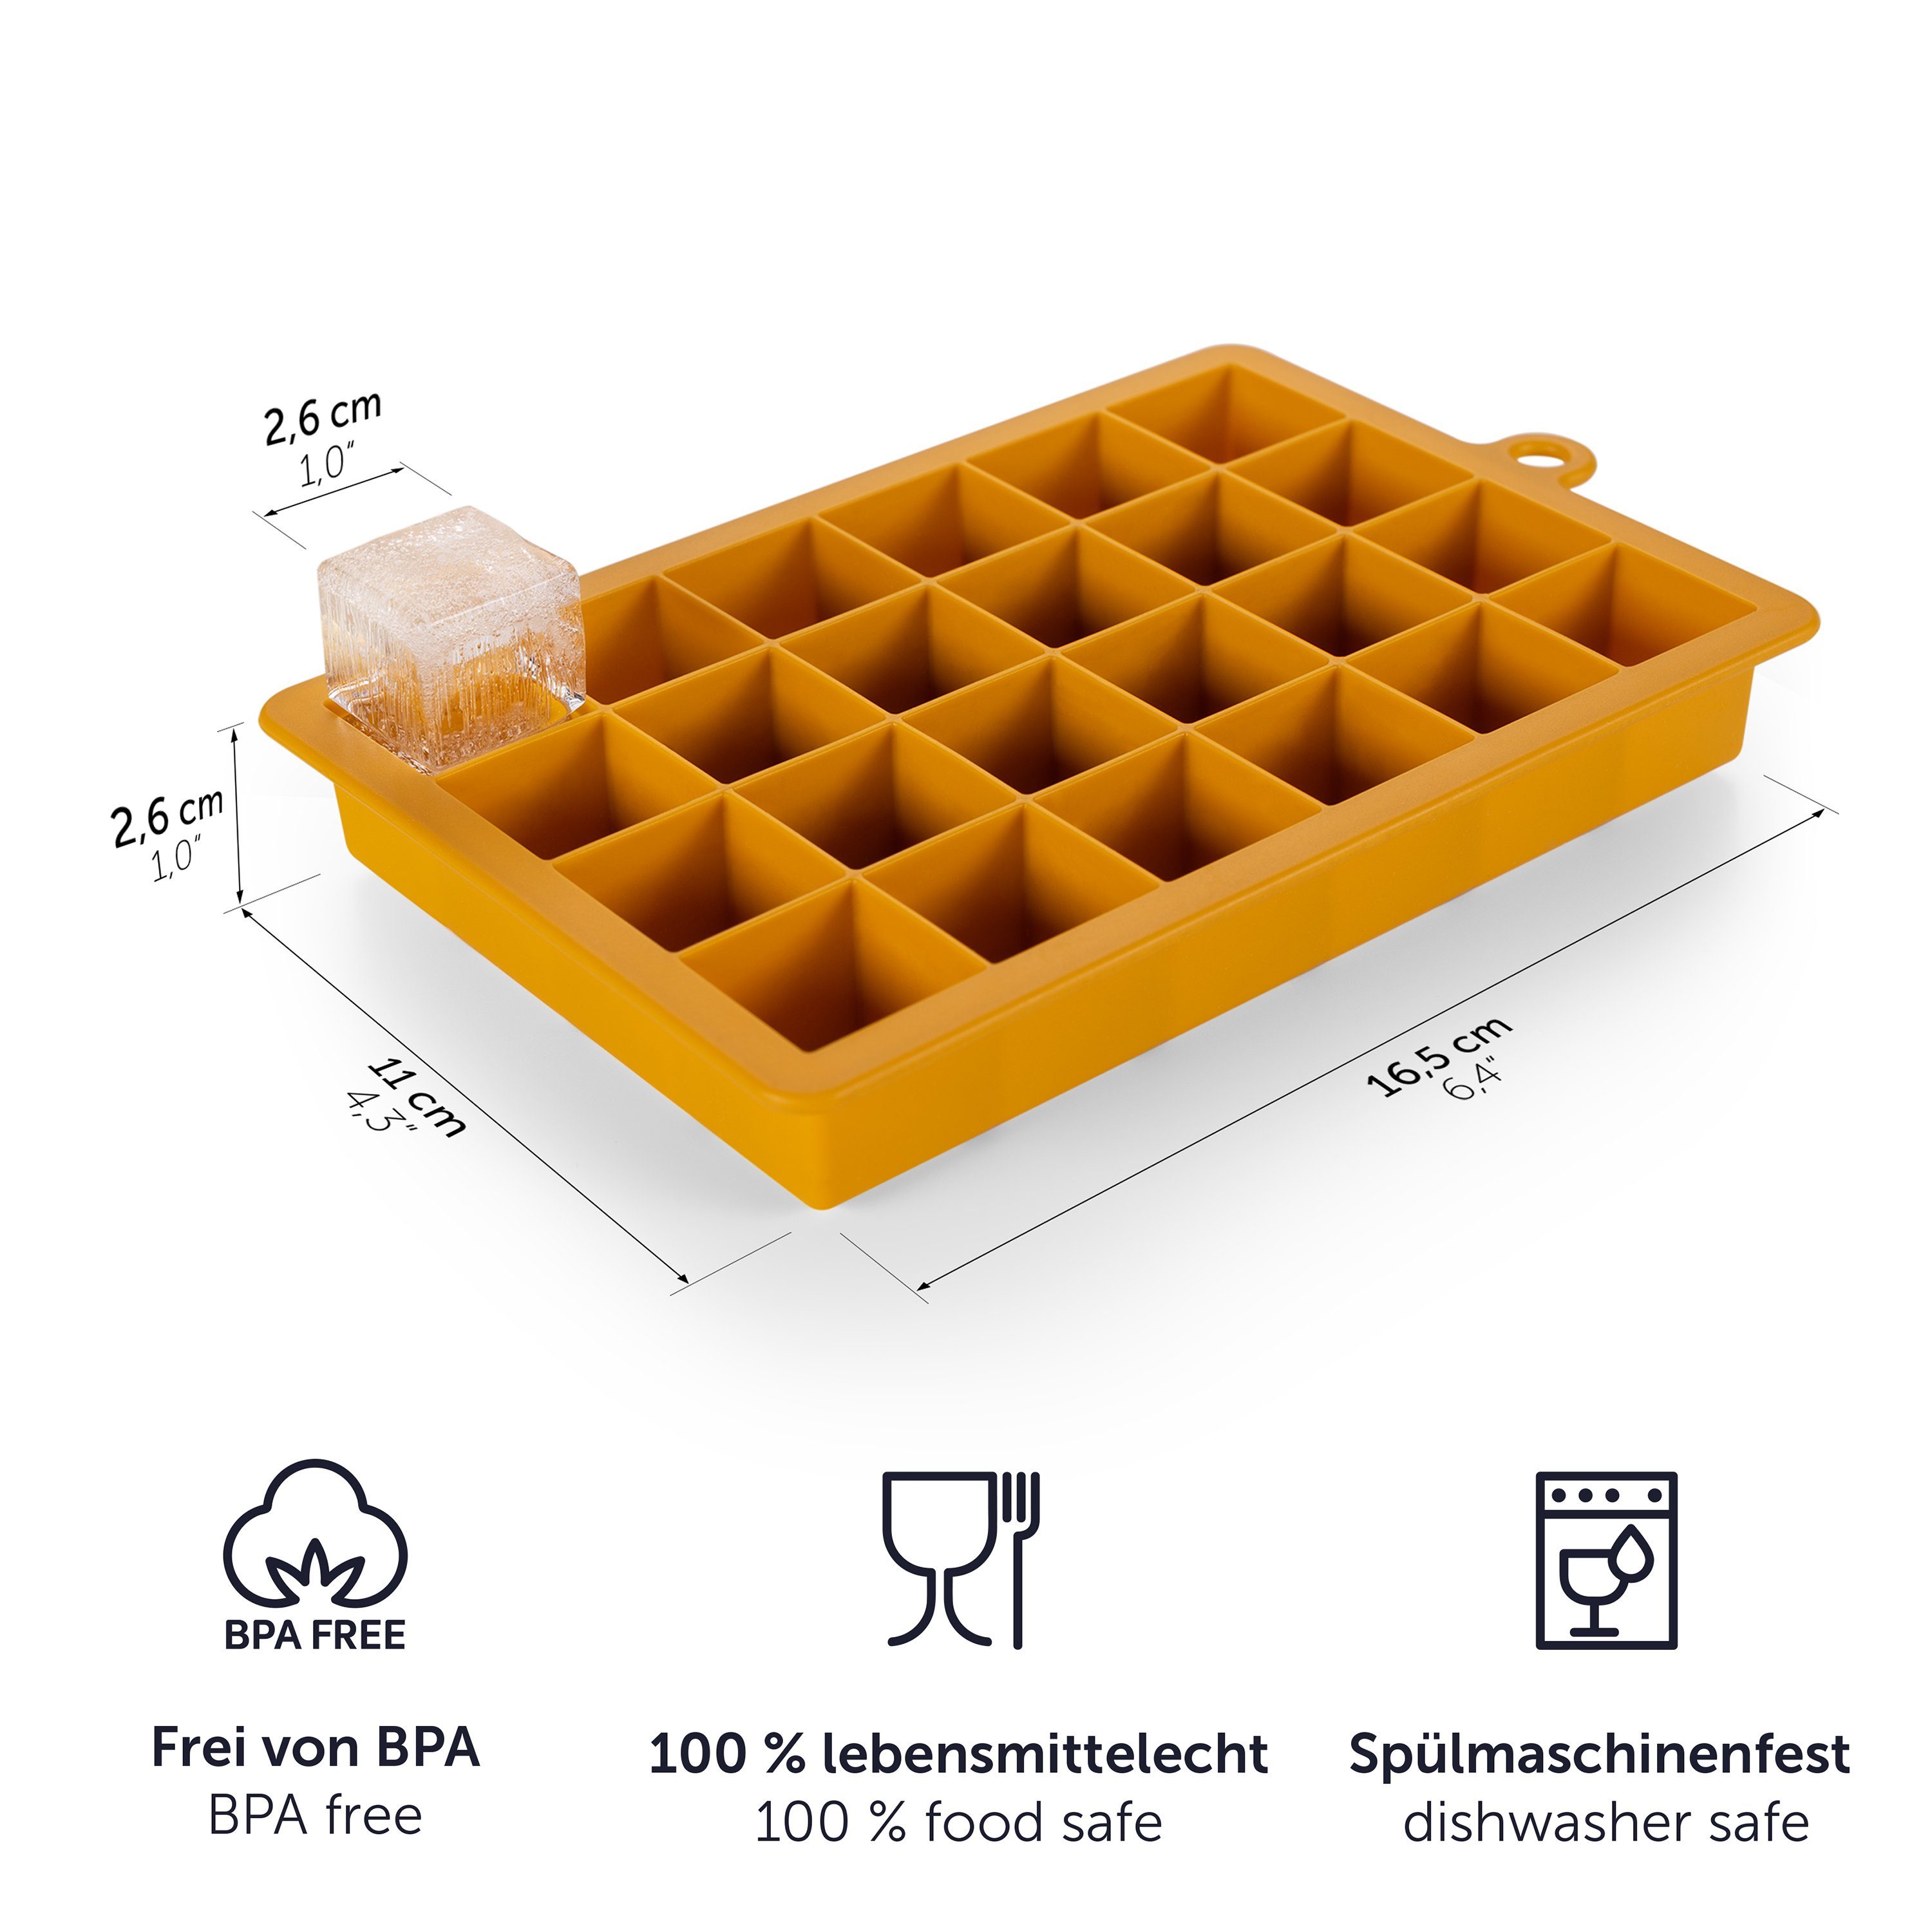 Blumtal Eiswürfelform Eiswürfelform & M, der BPA Würfelgröße Gelb frei, Herauslösen - 2x24er Schwarz Eiswürfel Leichtes Pack, Würfel Silikon